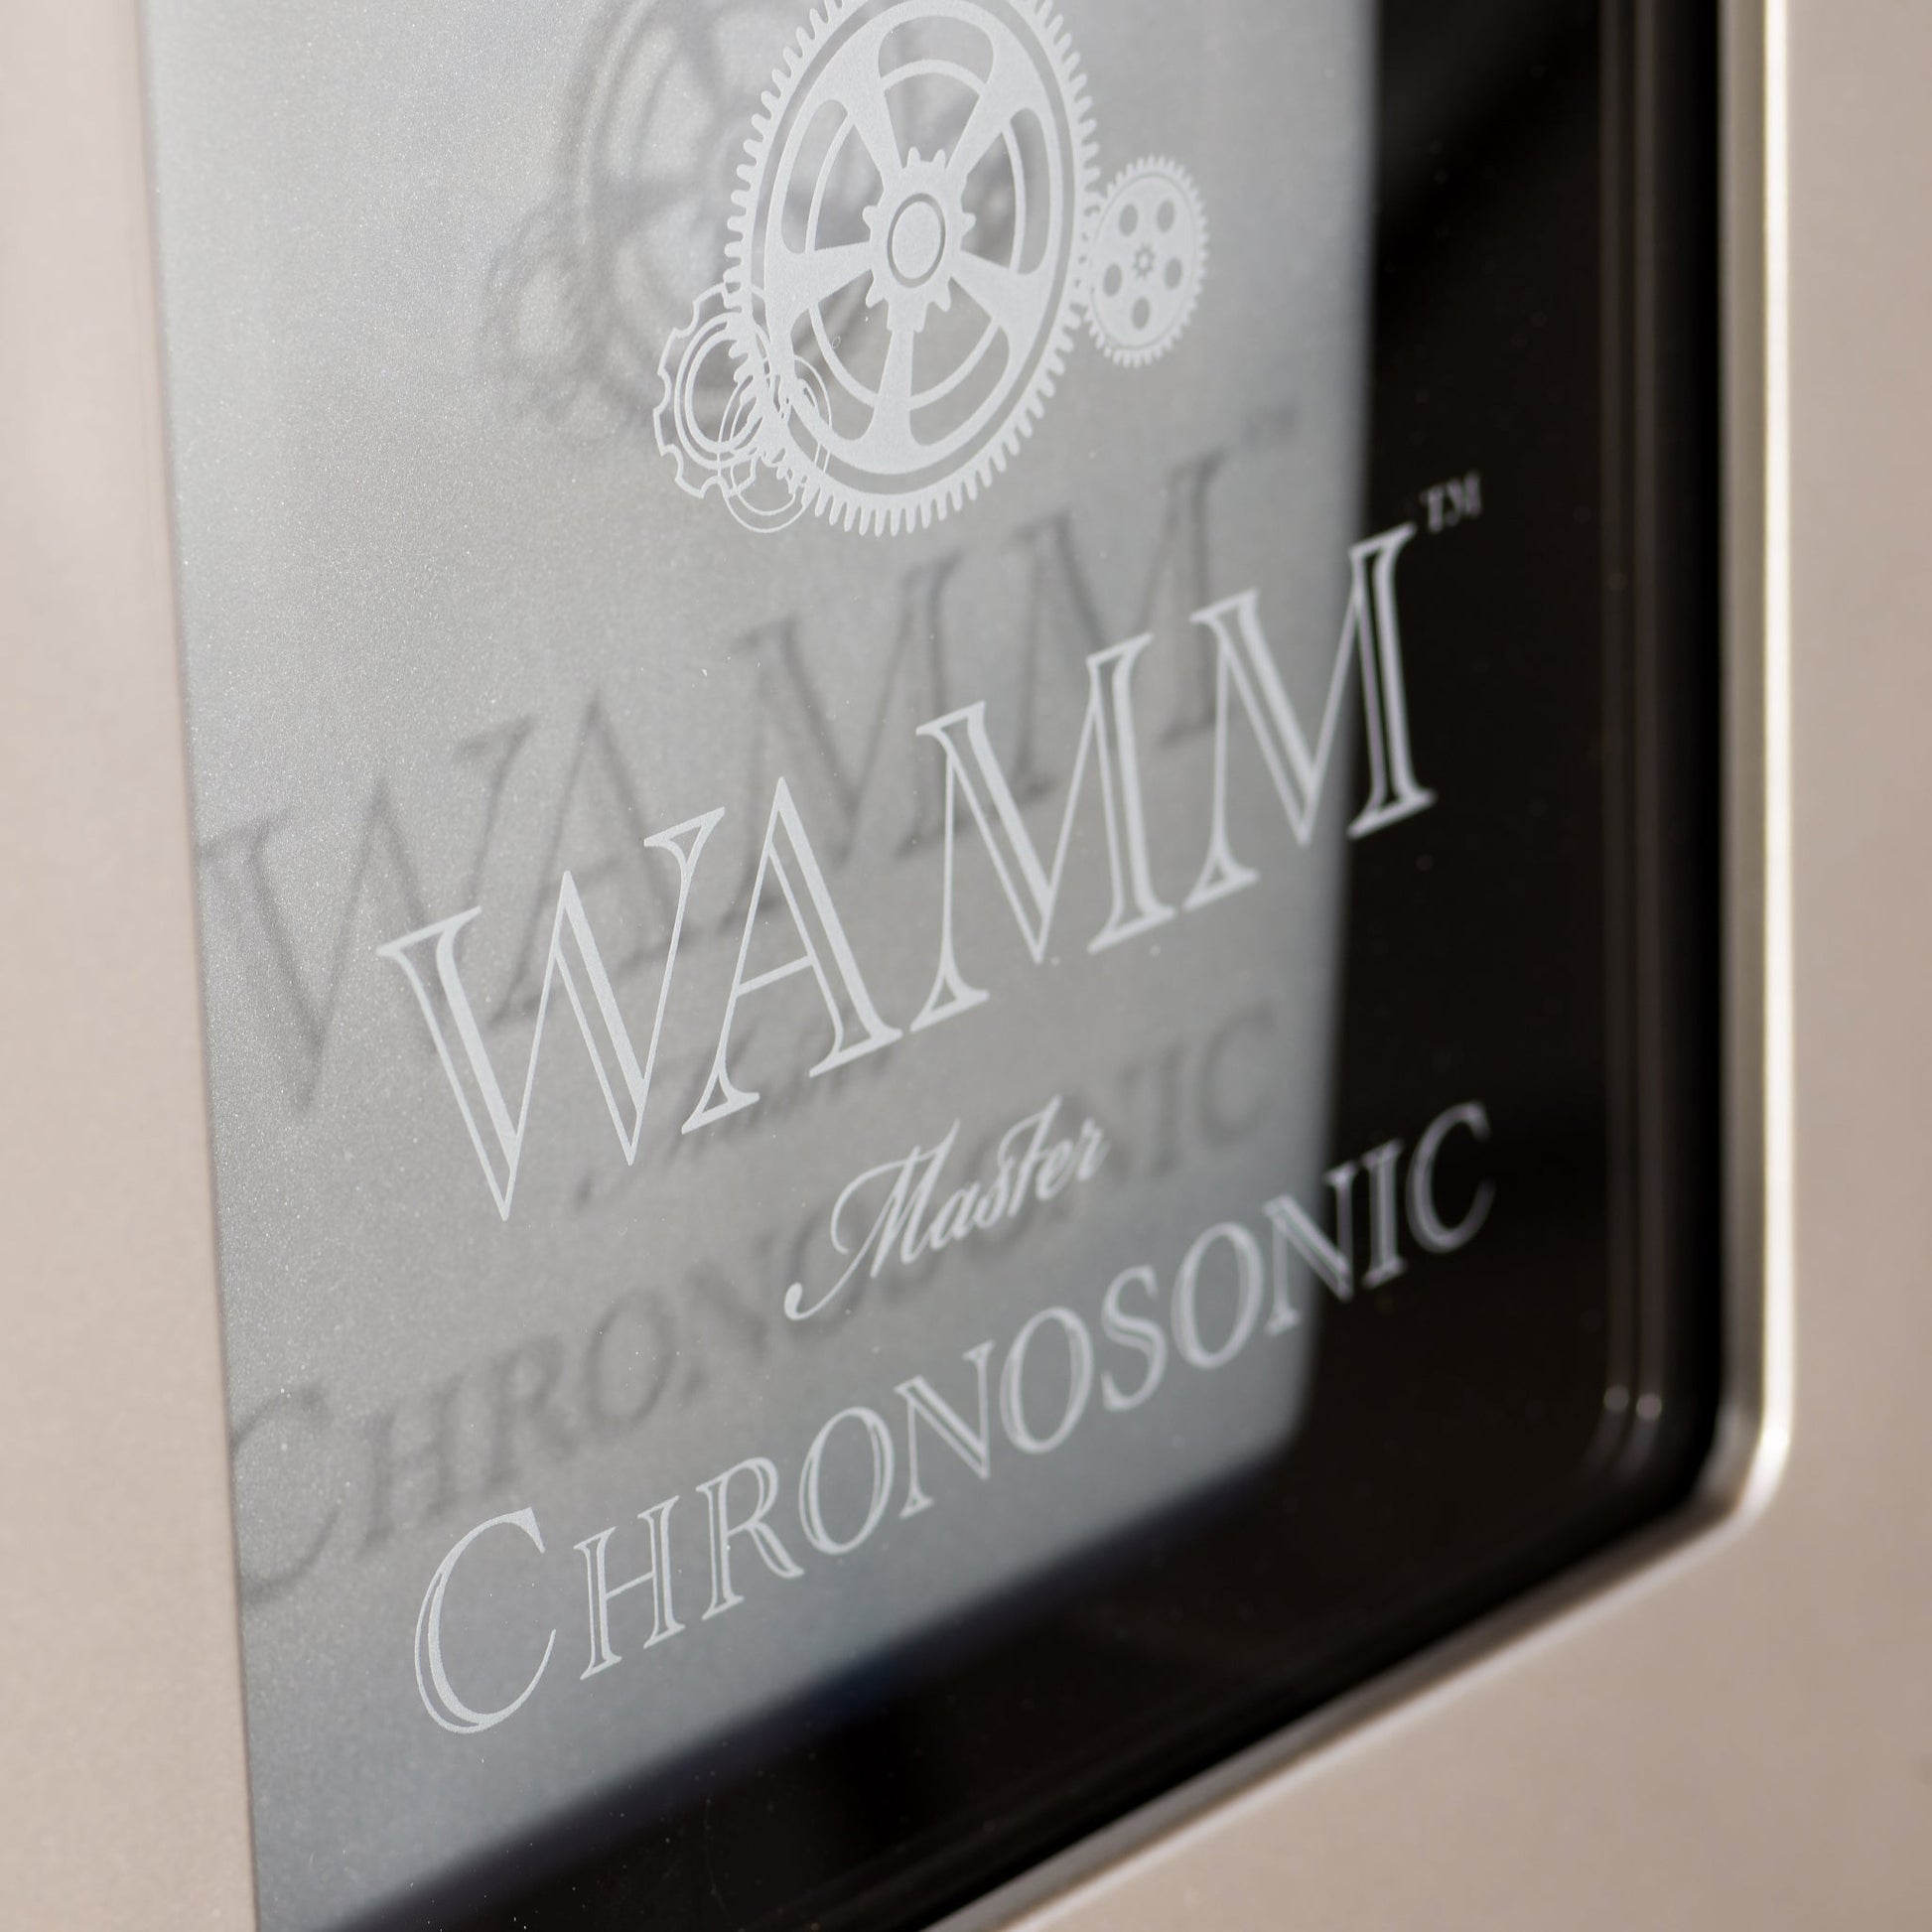 Wilson Audio WAMM Master Chronosonic - Trimira